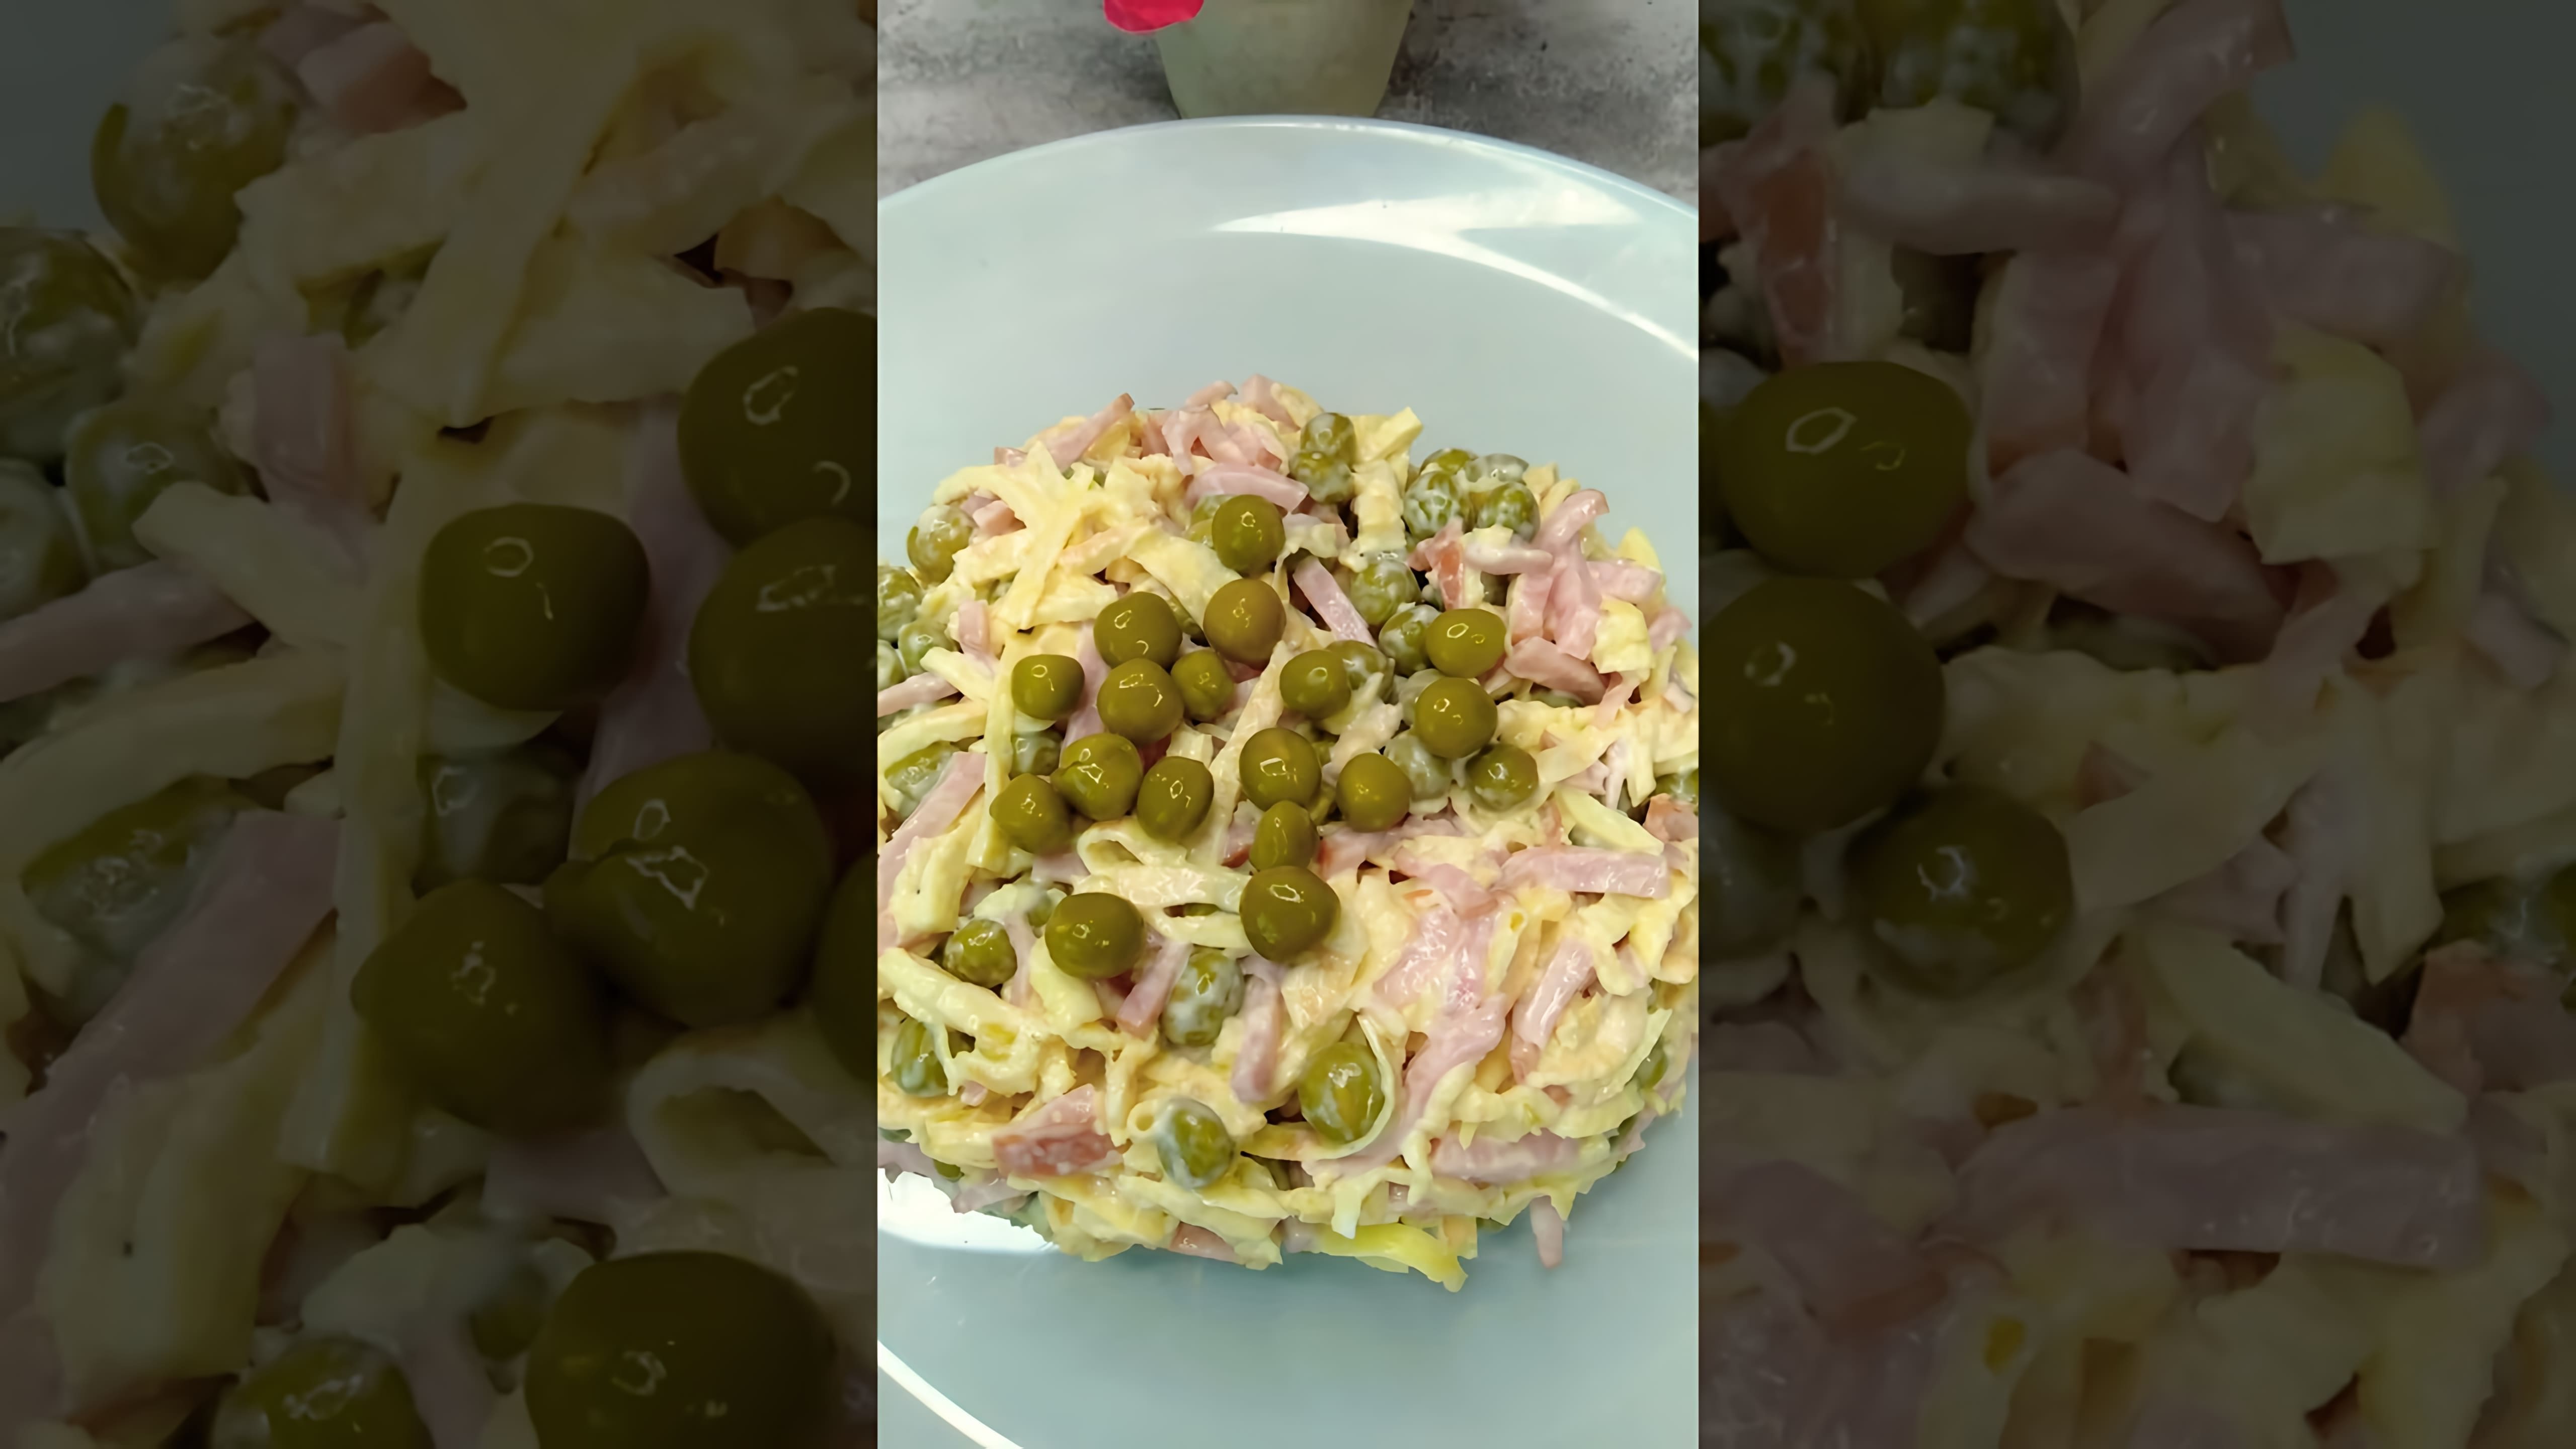 В этом видео демонстрируется рецепт салата с яичными блинами и колбасой